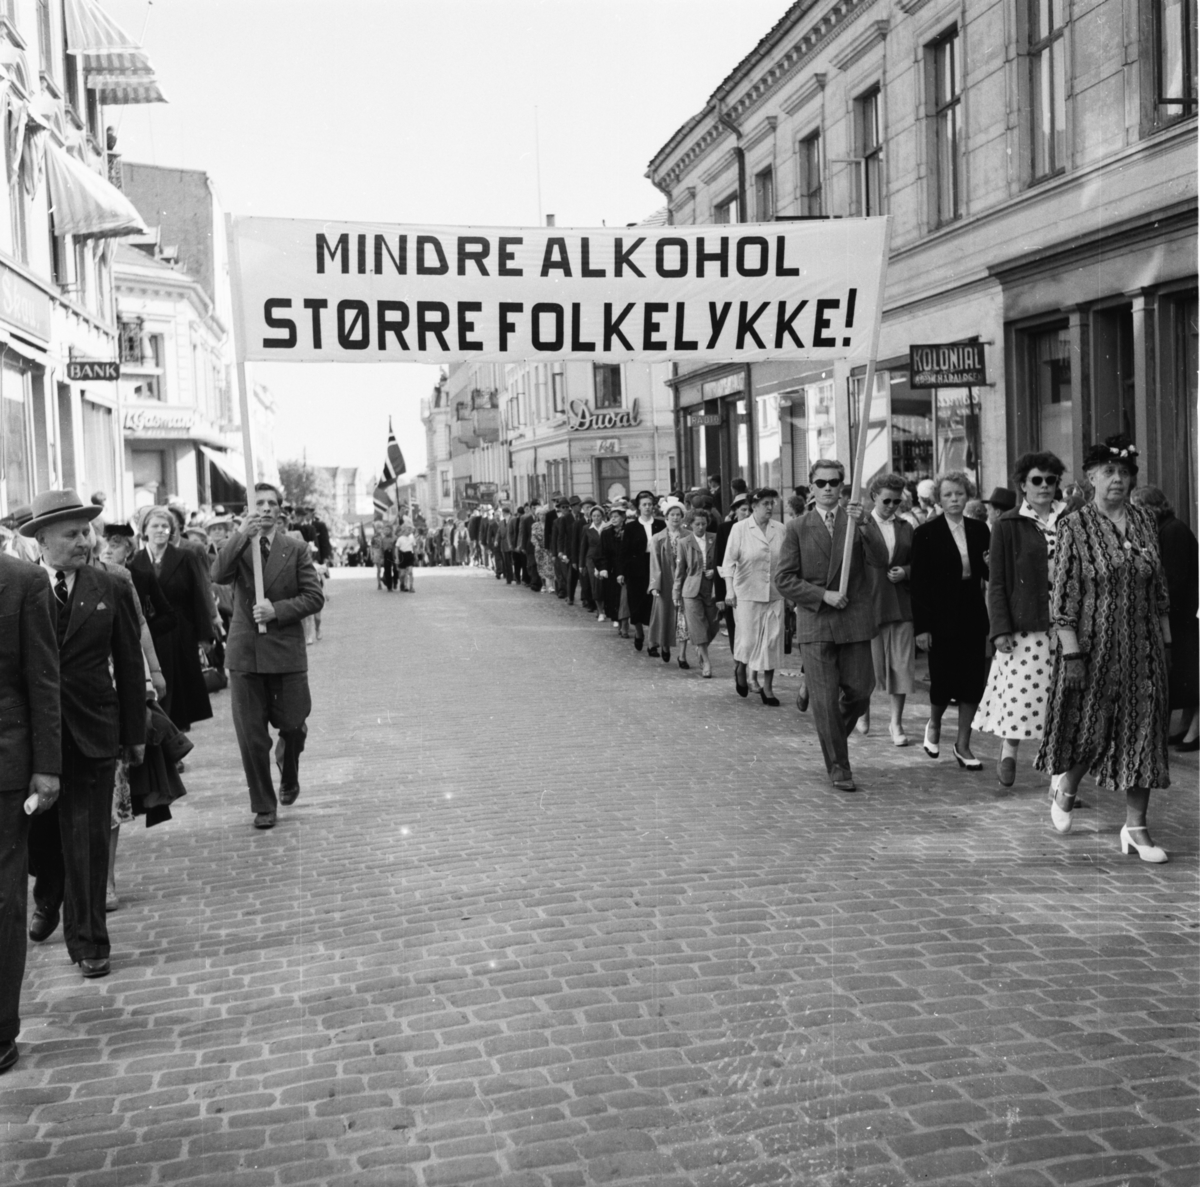 Vardens arkiv. "Avholdsfolkets demonstrasjonstog i Skiens gater."  ukjent dato.05.1954